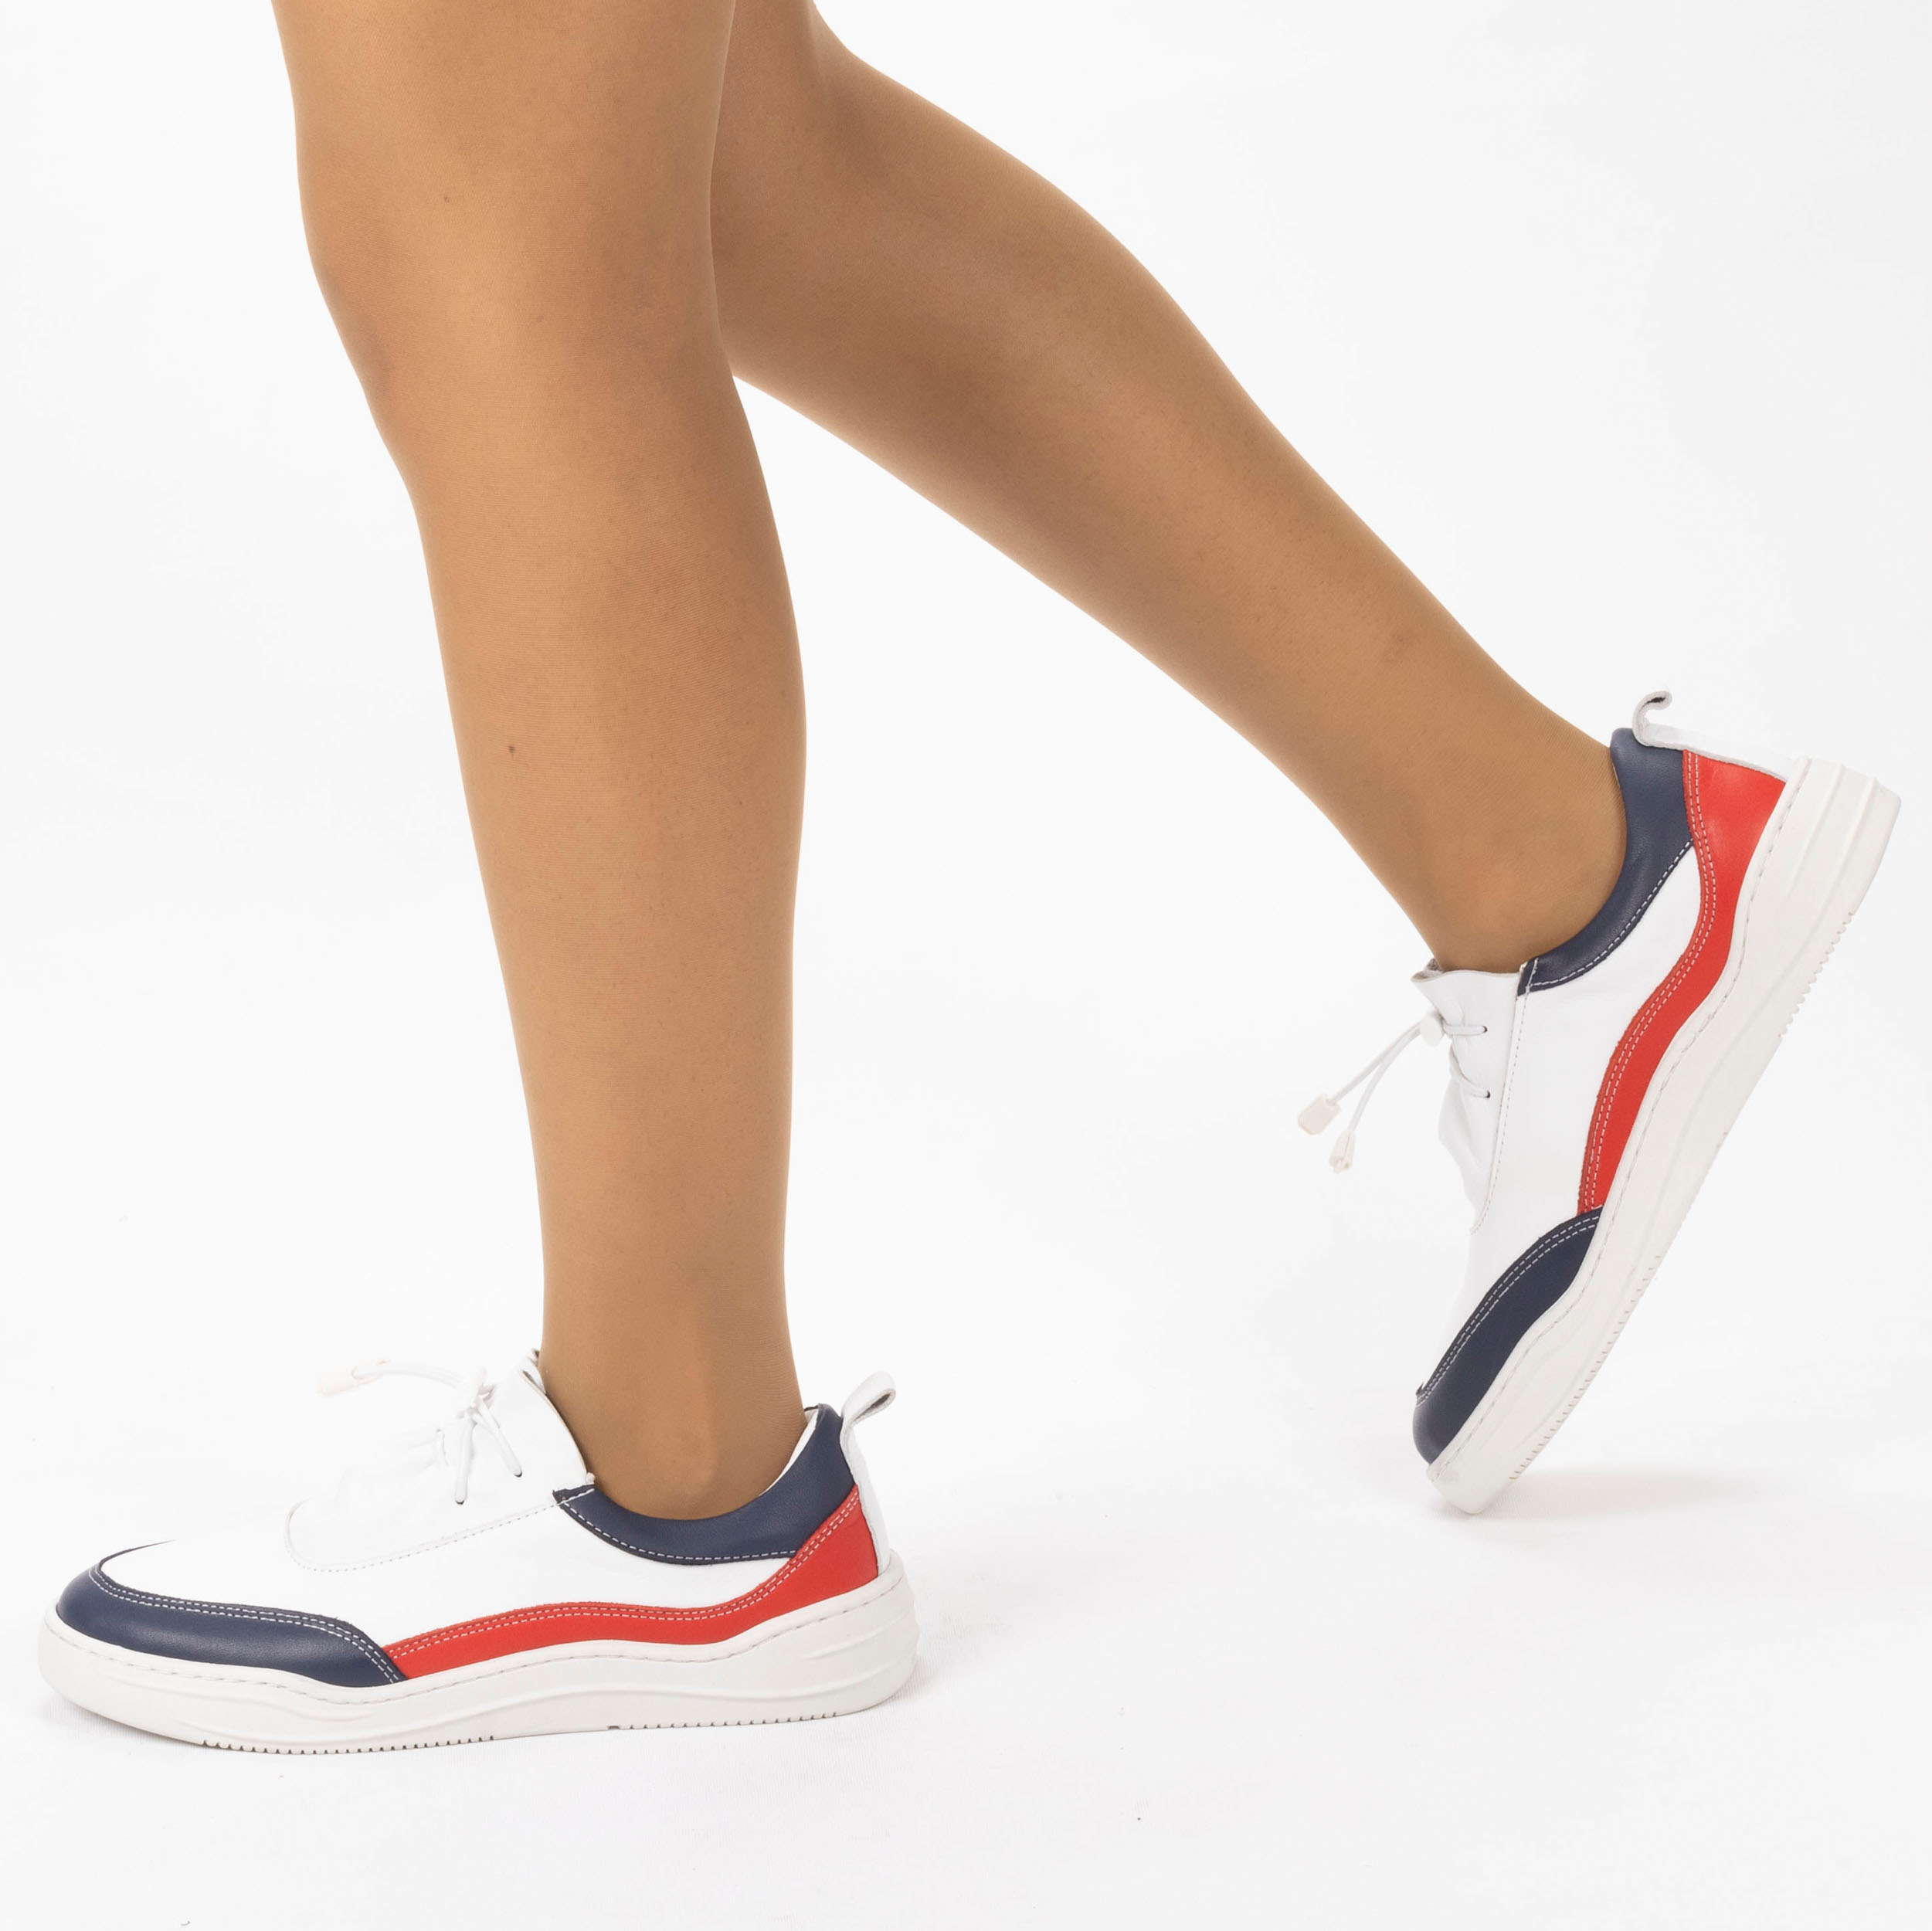 Kadın Hakiki Deri  Günlük Spor Ayakkabı / Sneakers, Renk: Lacivert - Kırmızı, Beden: 39